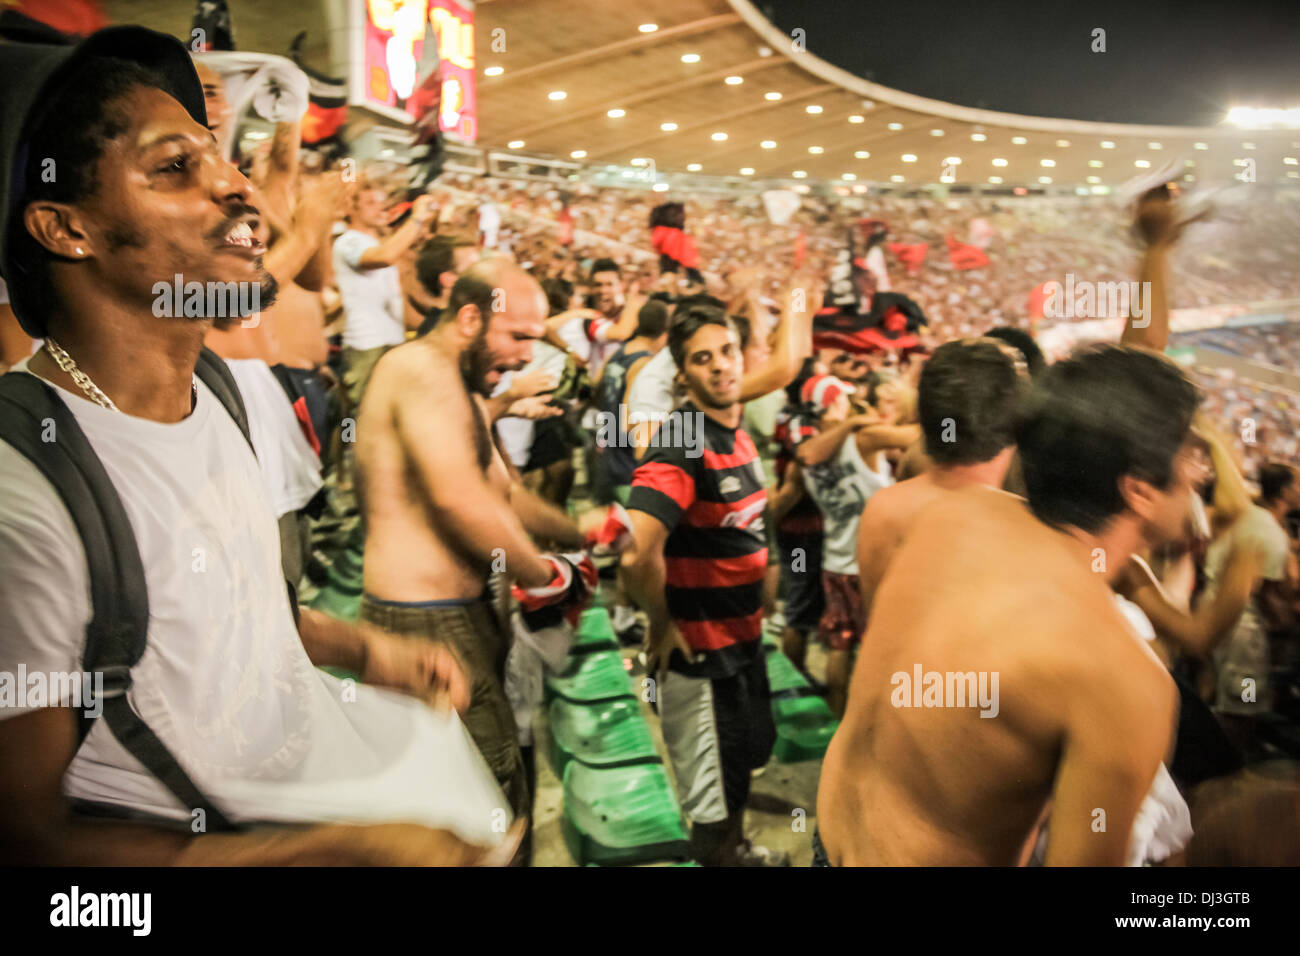 Les partisans du club de football de Rio Flamengo (Clube de Regatas do Flamengo) célèbrent un objectif de l'équipe note d'au stade du Maracanã. Banque D'Images